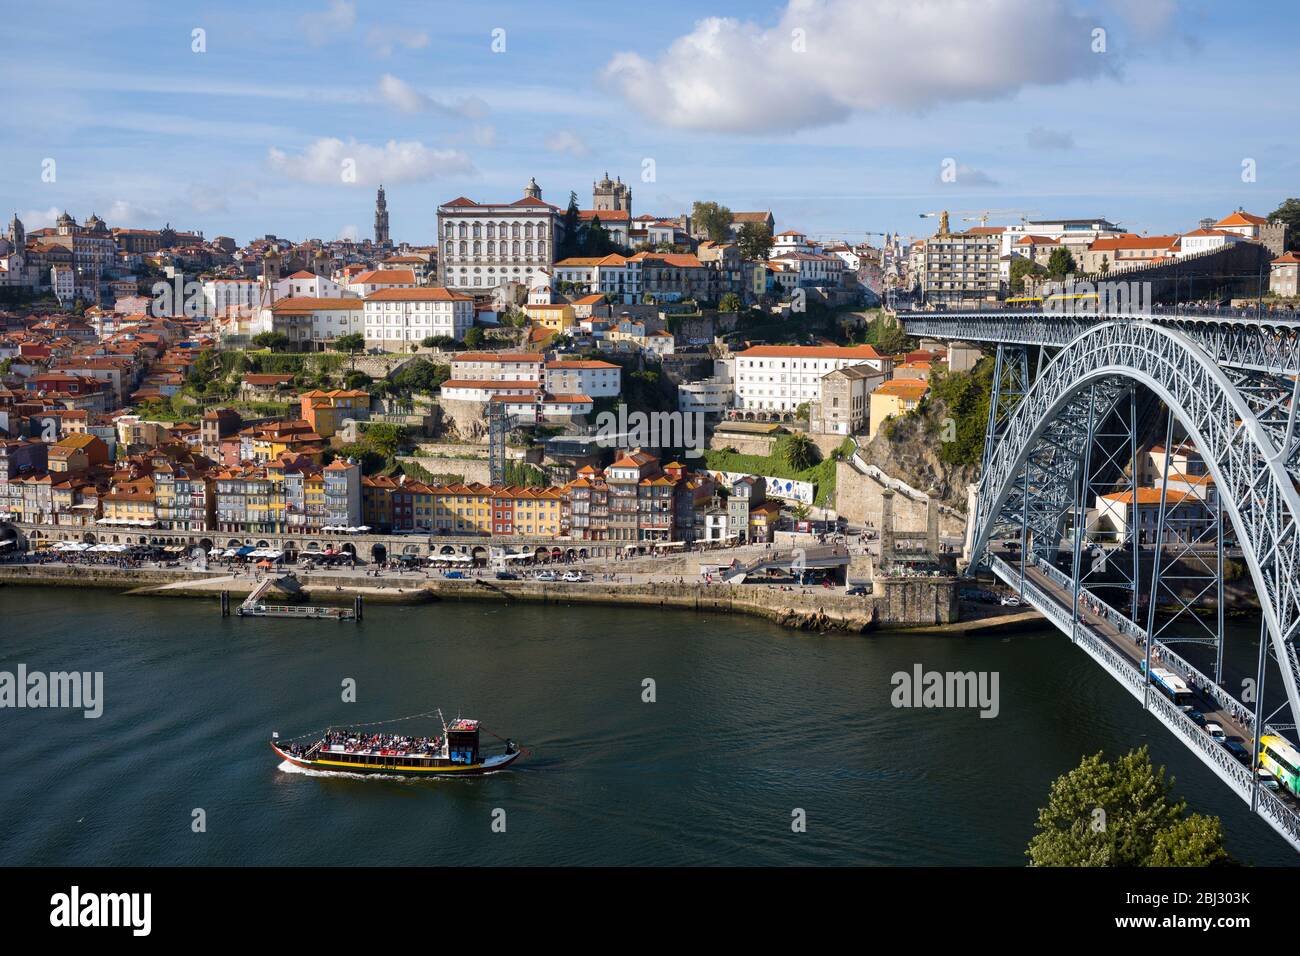 Rabelo puerto barcaza del vino y el Ponte de Dom Luis I - puente de arco de metal sobre el río Duero que conecta Porto con V|la Nova de Gaia, Portugal Foto de stock